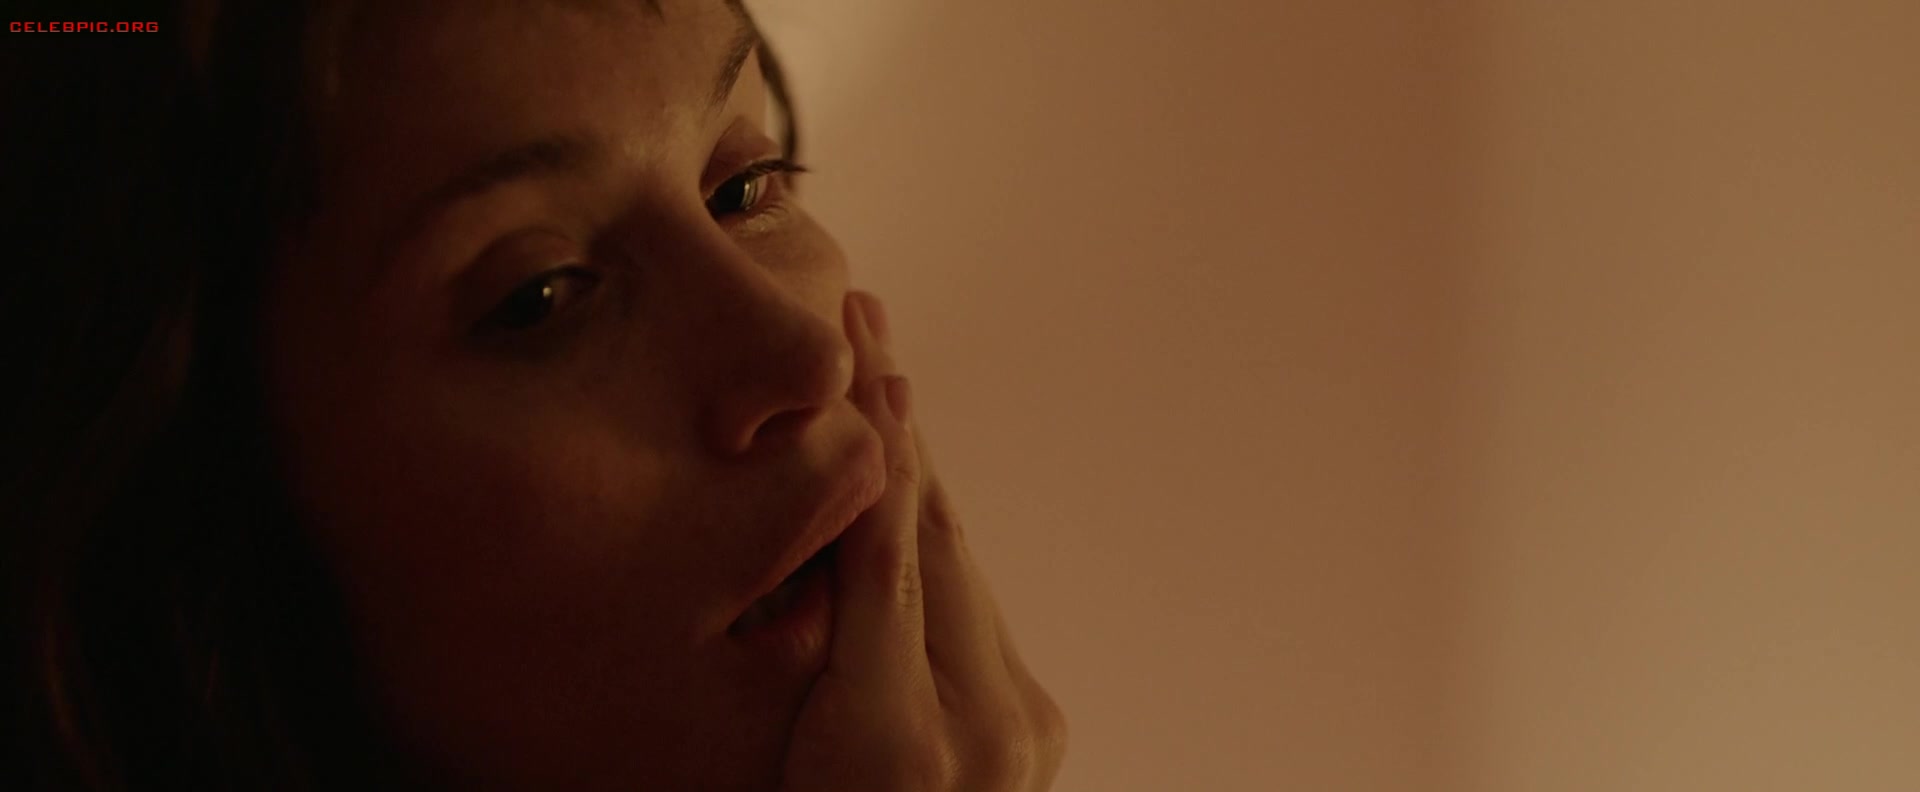 Gemma Arterton - The Escape 1080p (1) 1591.jpg